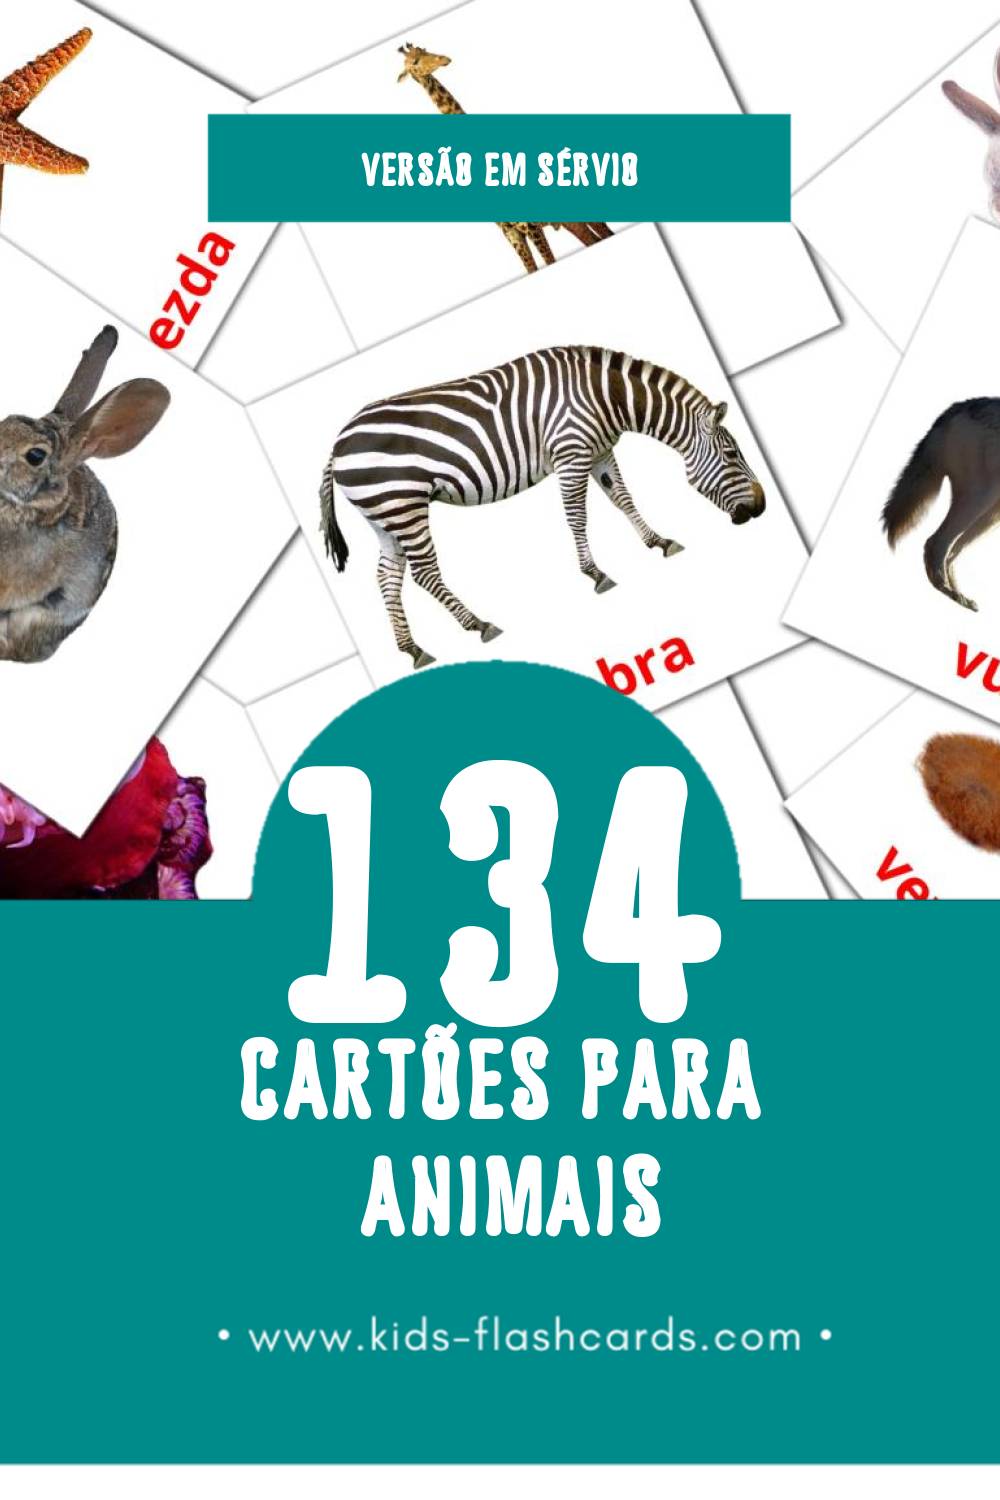 Flashcards de Životinje Visuais para Toddlers (134 cartões em Sérvio)